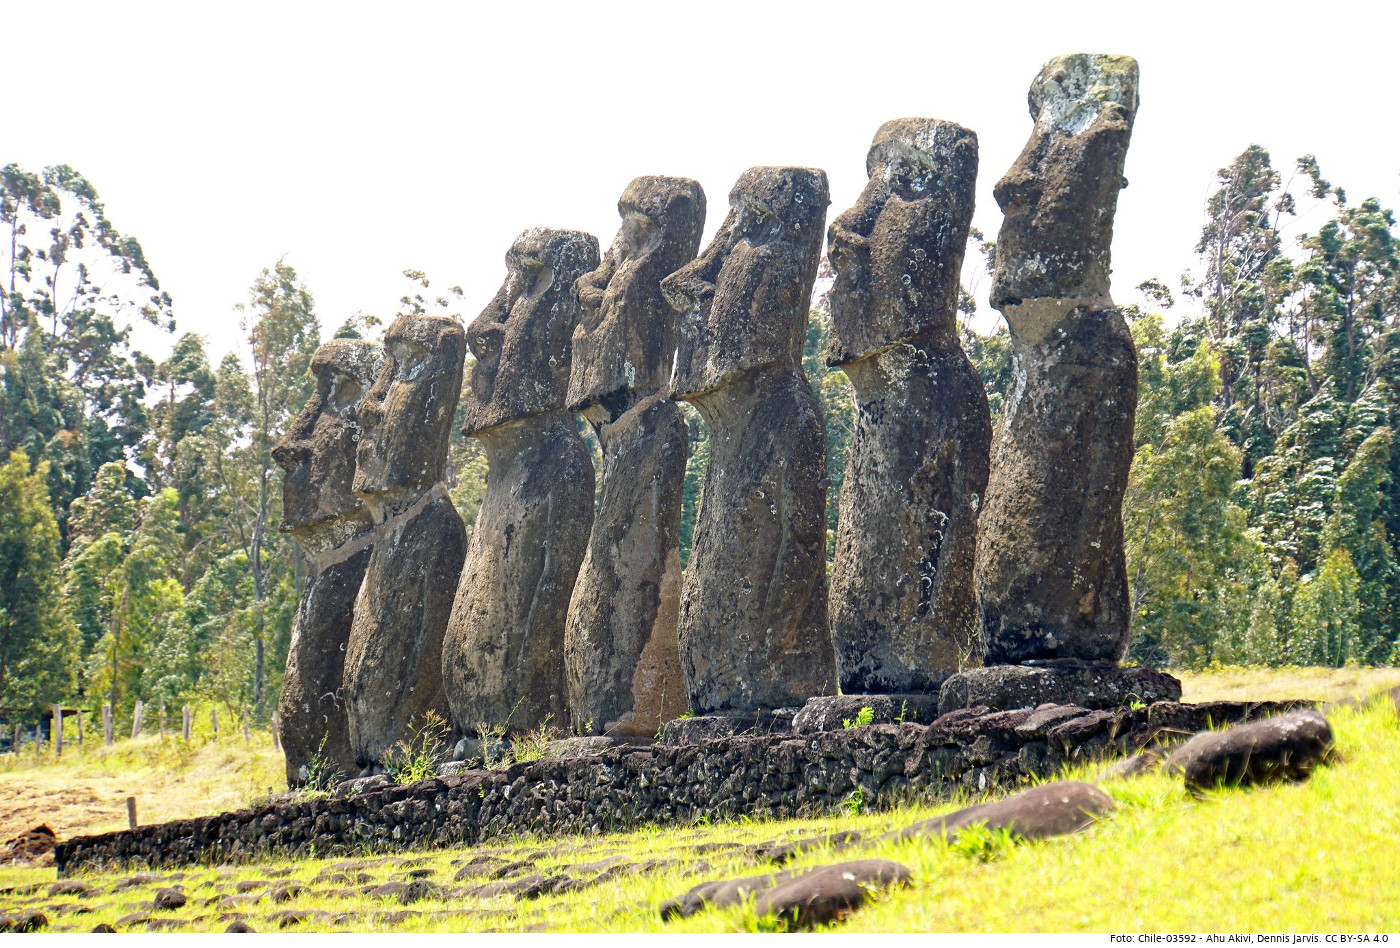 Die Osterinsel ist berühmt für ihre Moái-Steinskulpturen der Rapa-Nui-Kultur. Vor der Corona-Pandemie haben sie jährlich tausende Touristen auf die Insel gelockt. Foto: Ahu Akivi, Dennis Jarvis, CC BY-SA 4.0